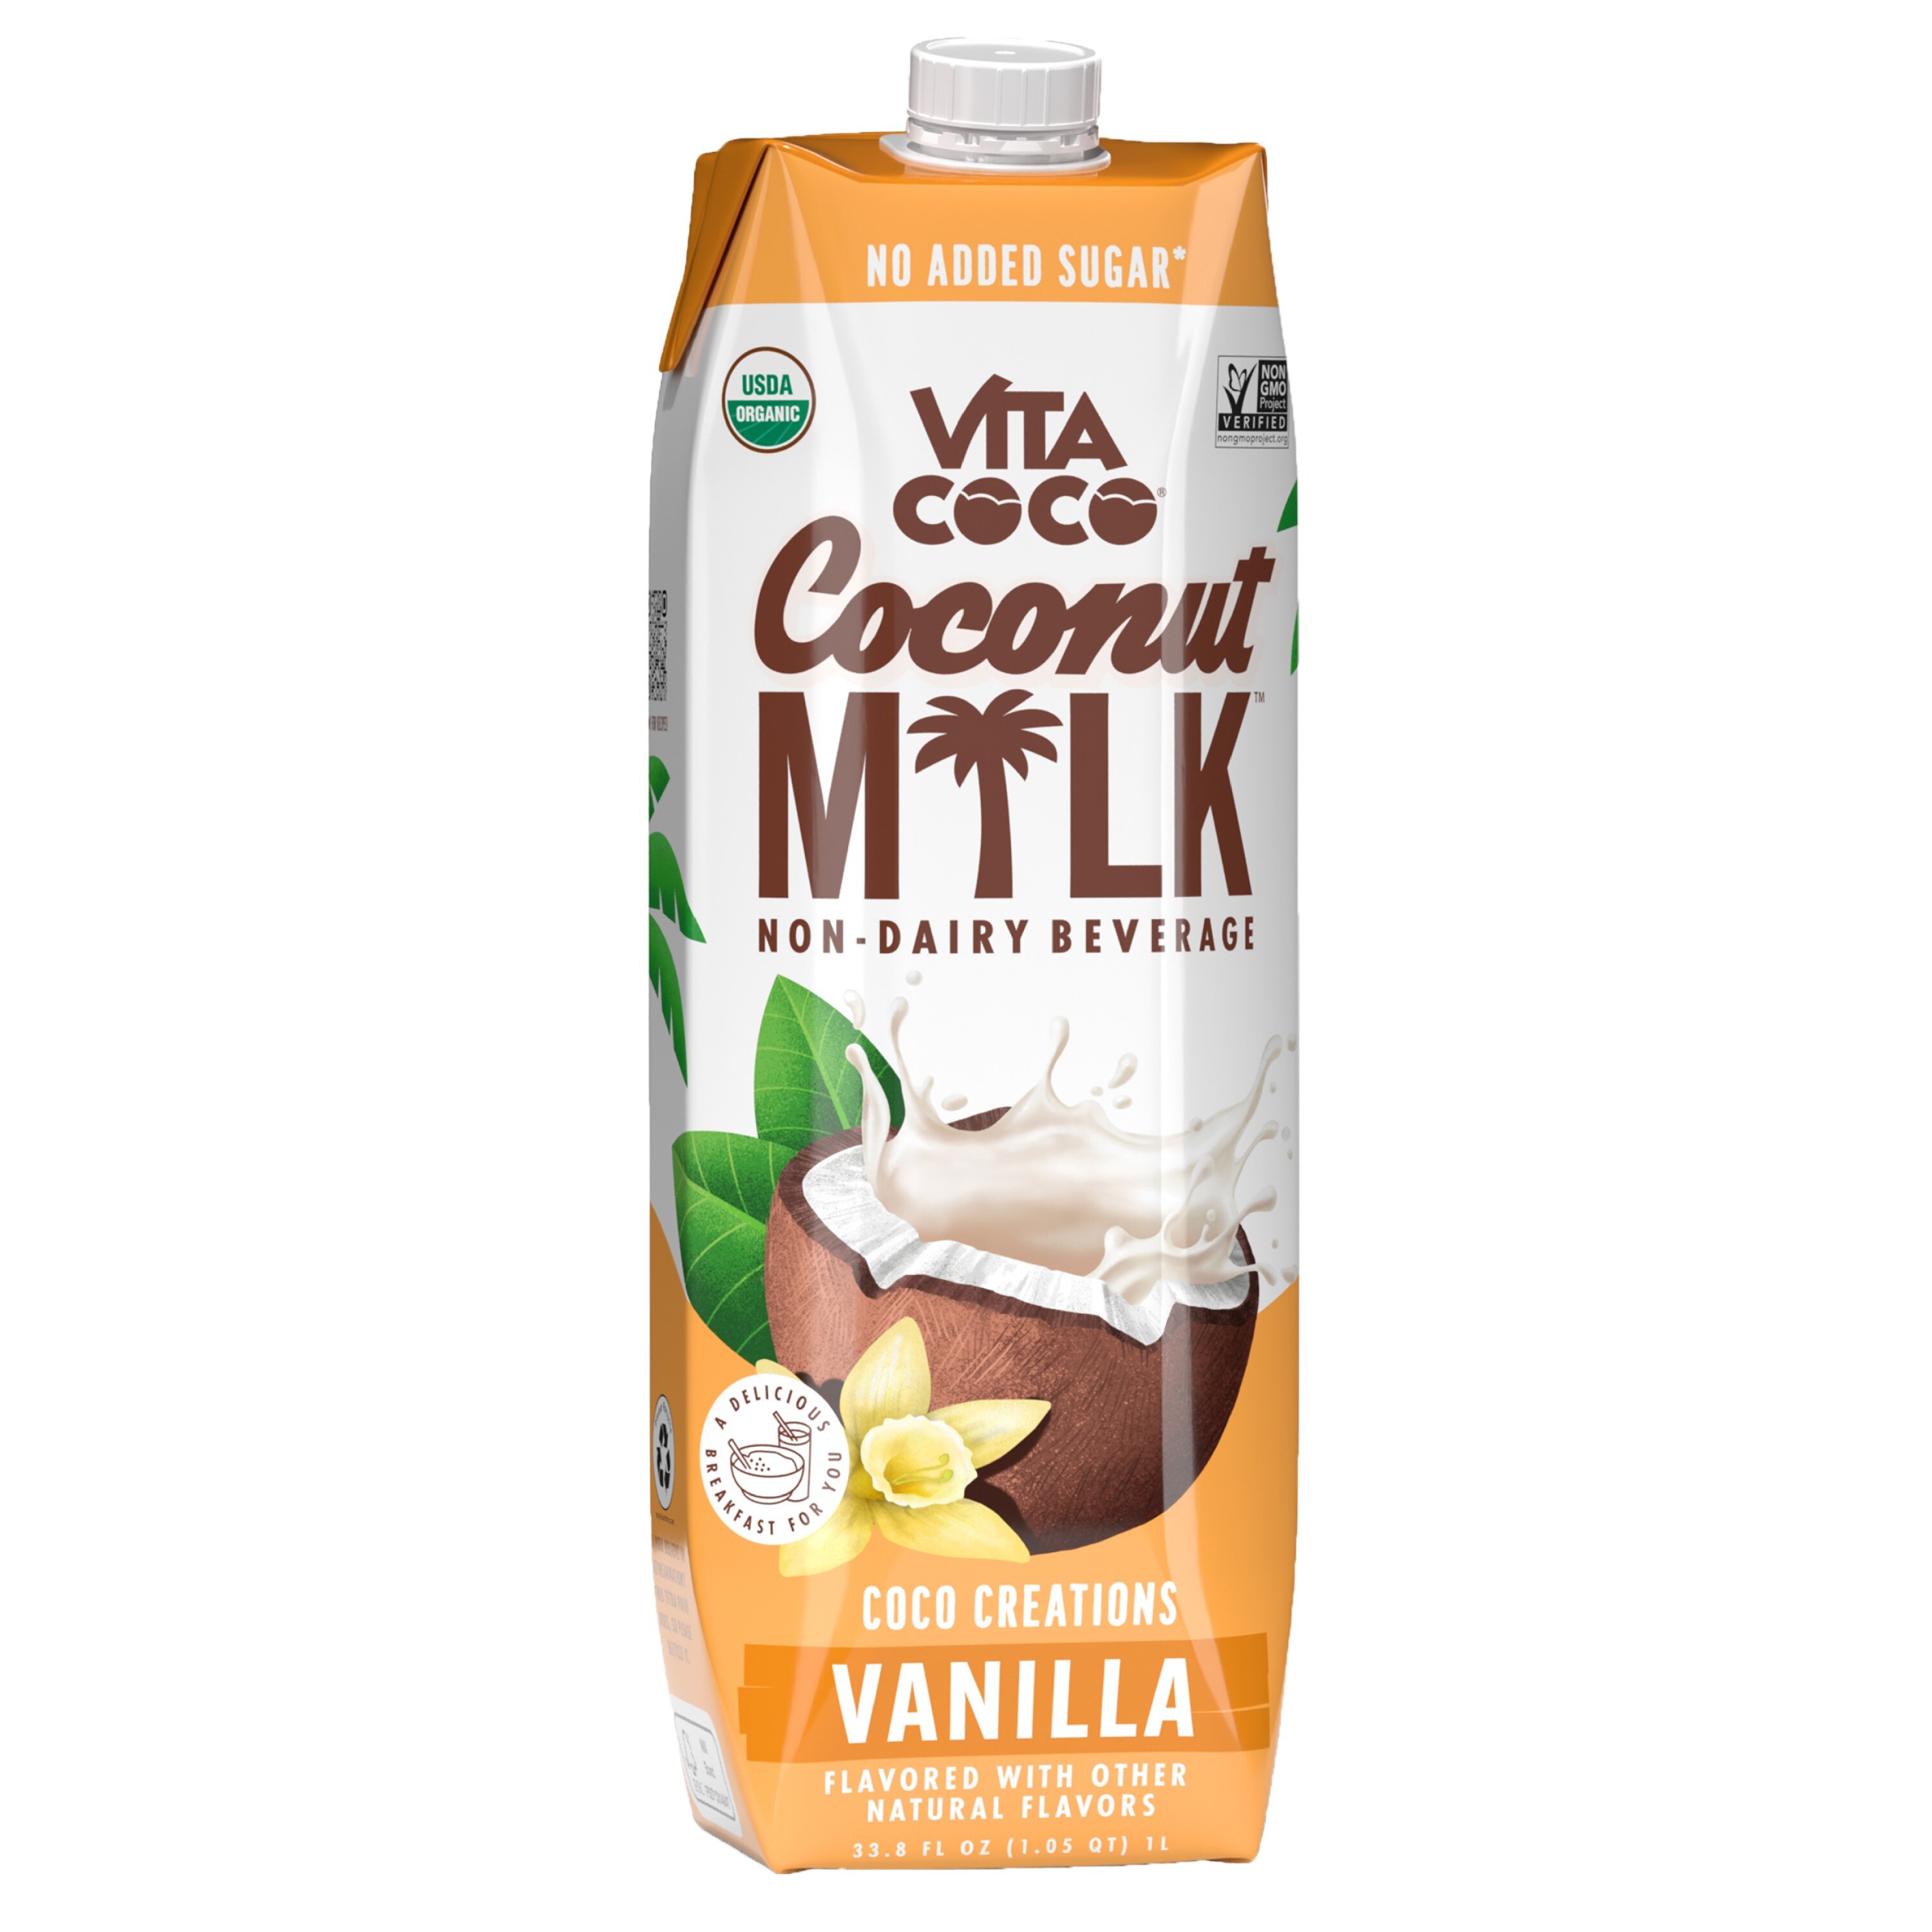 Vita Coco Coconut Milk Coco Creations, Vanilla, 33.8 Oz , CVS